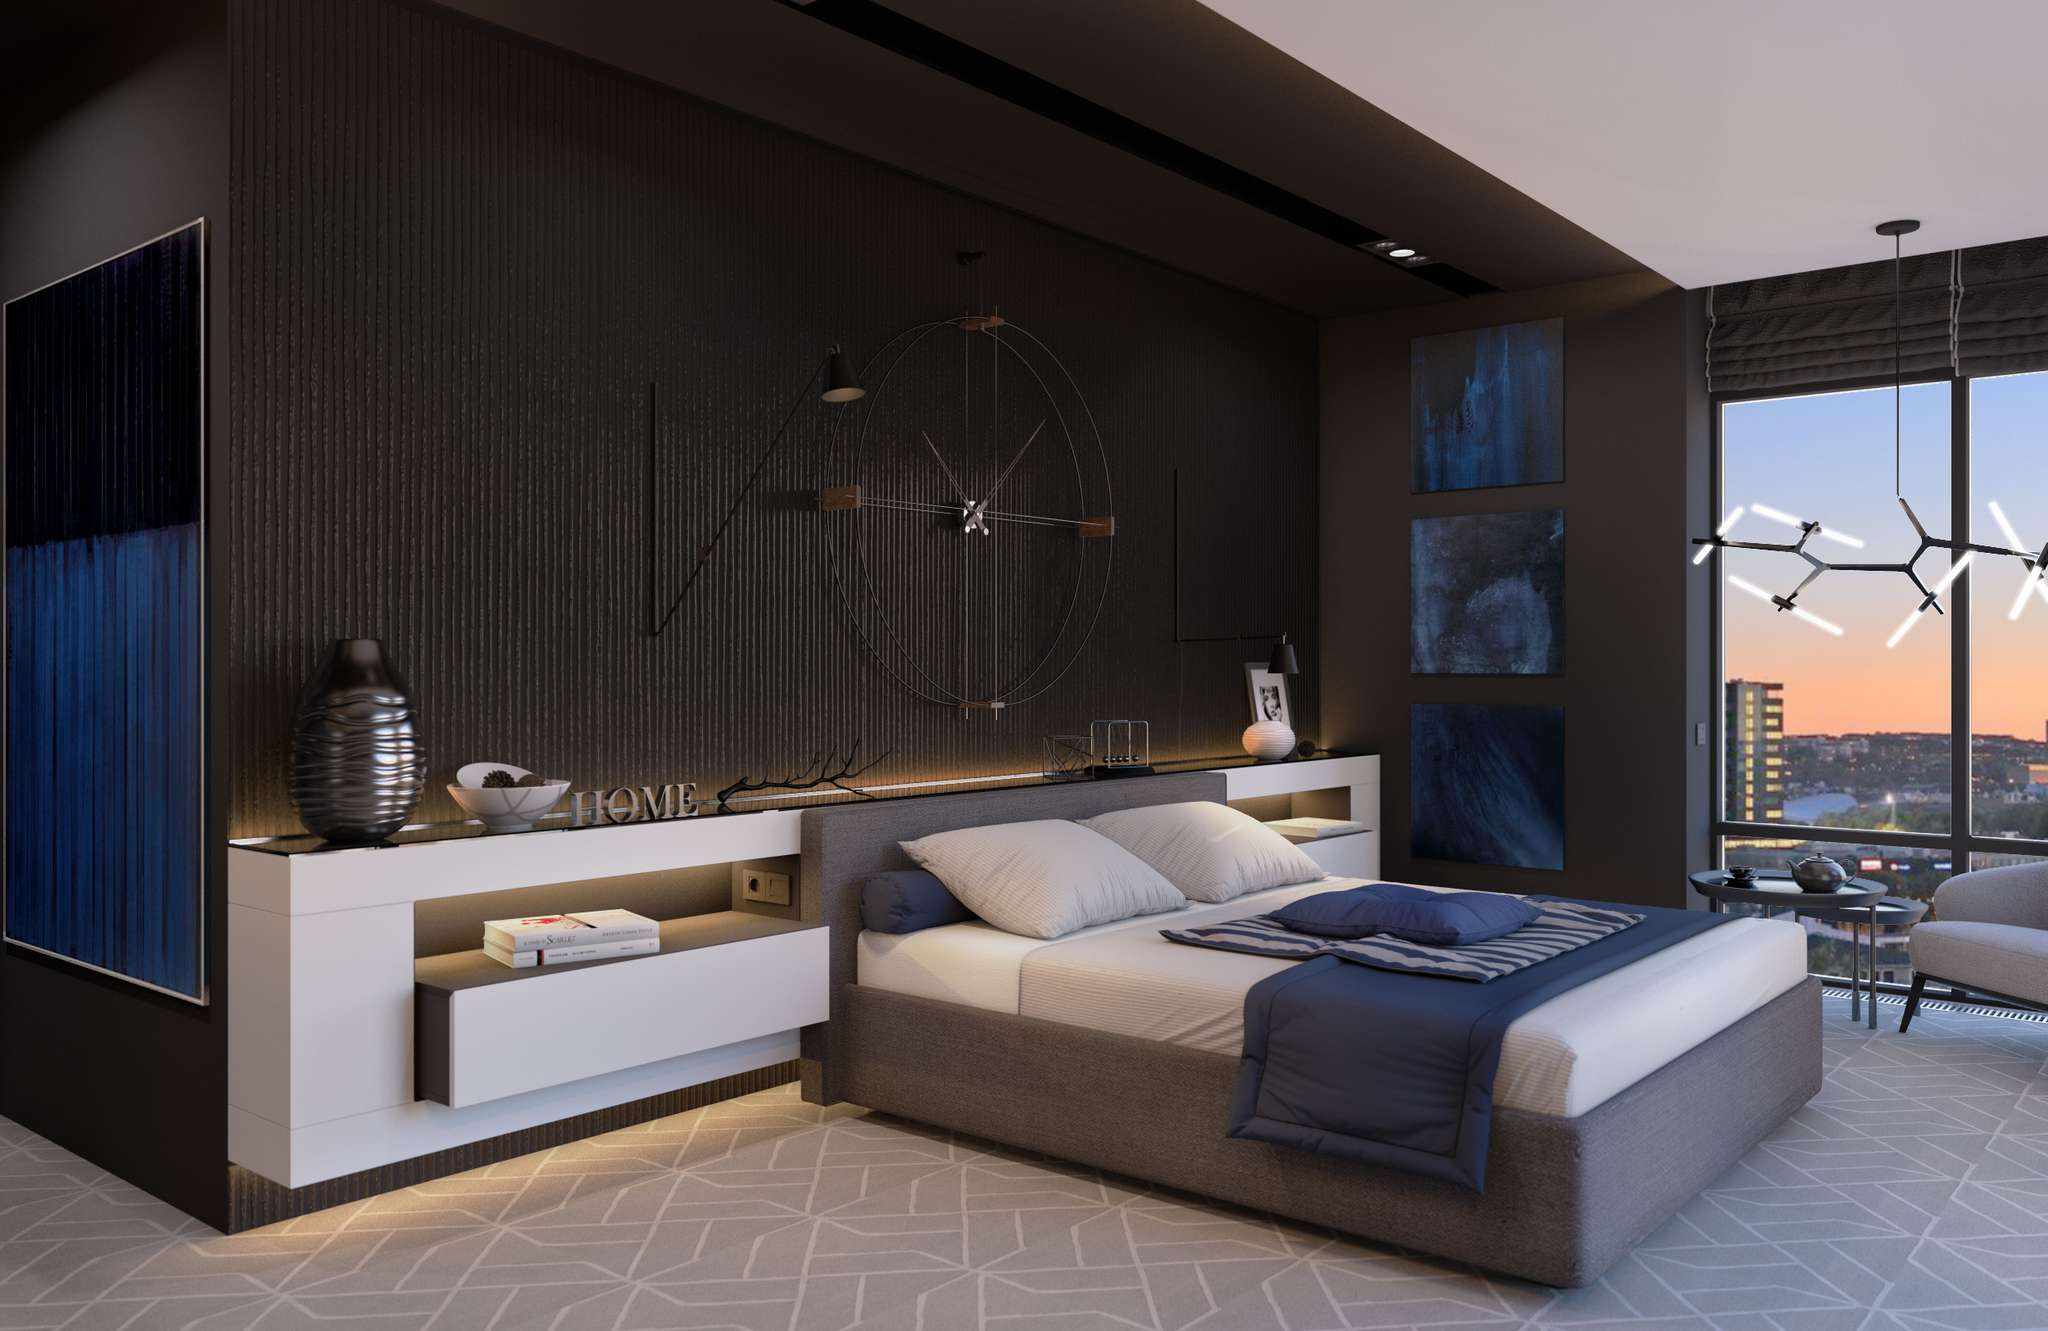 Un esempio di un brillante progetto di design della camera da letto